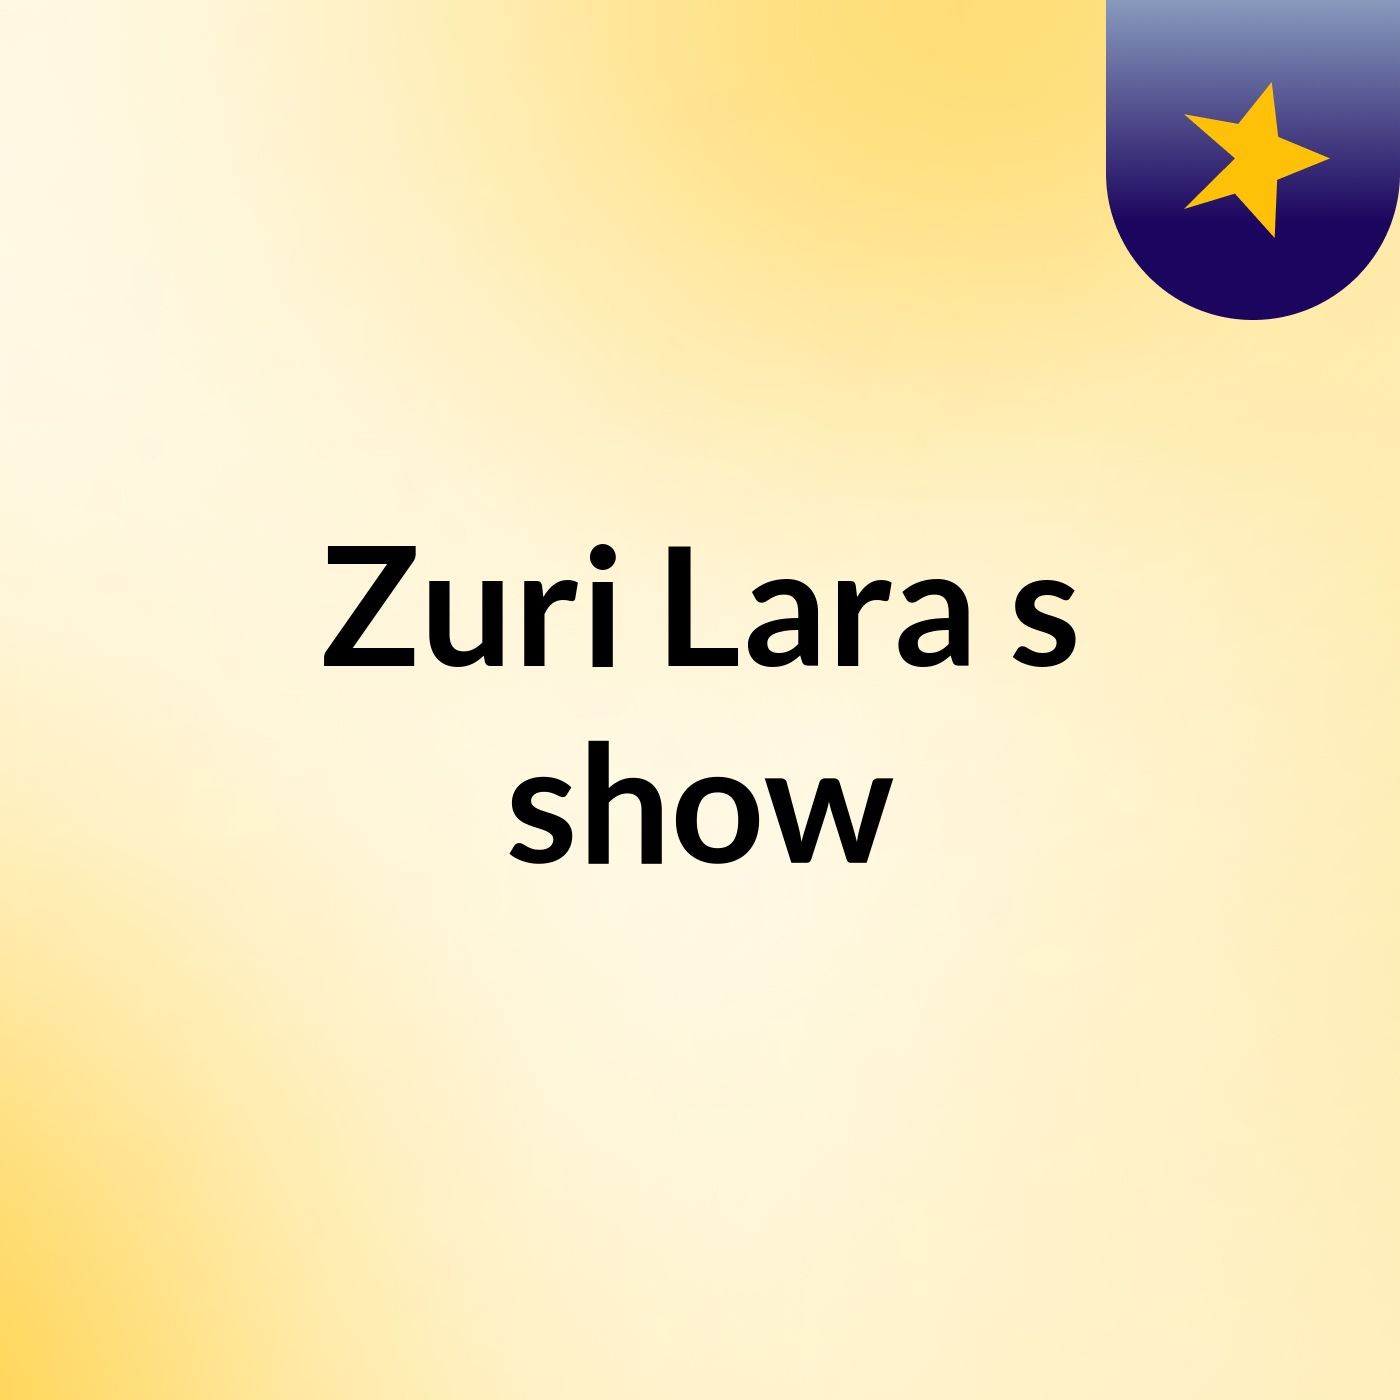 Zuri Lara's show